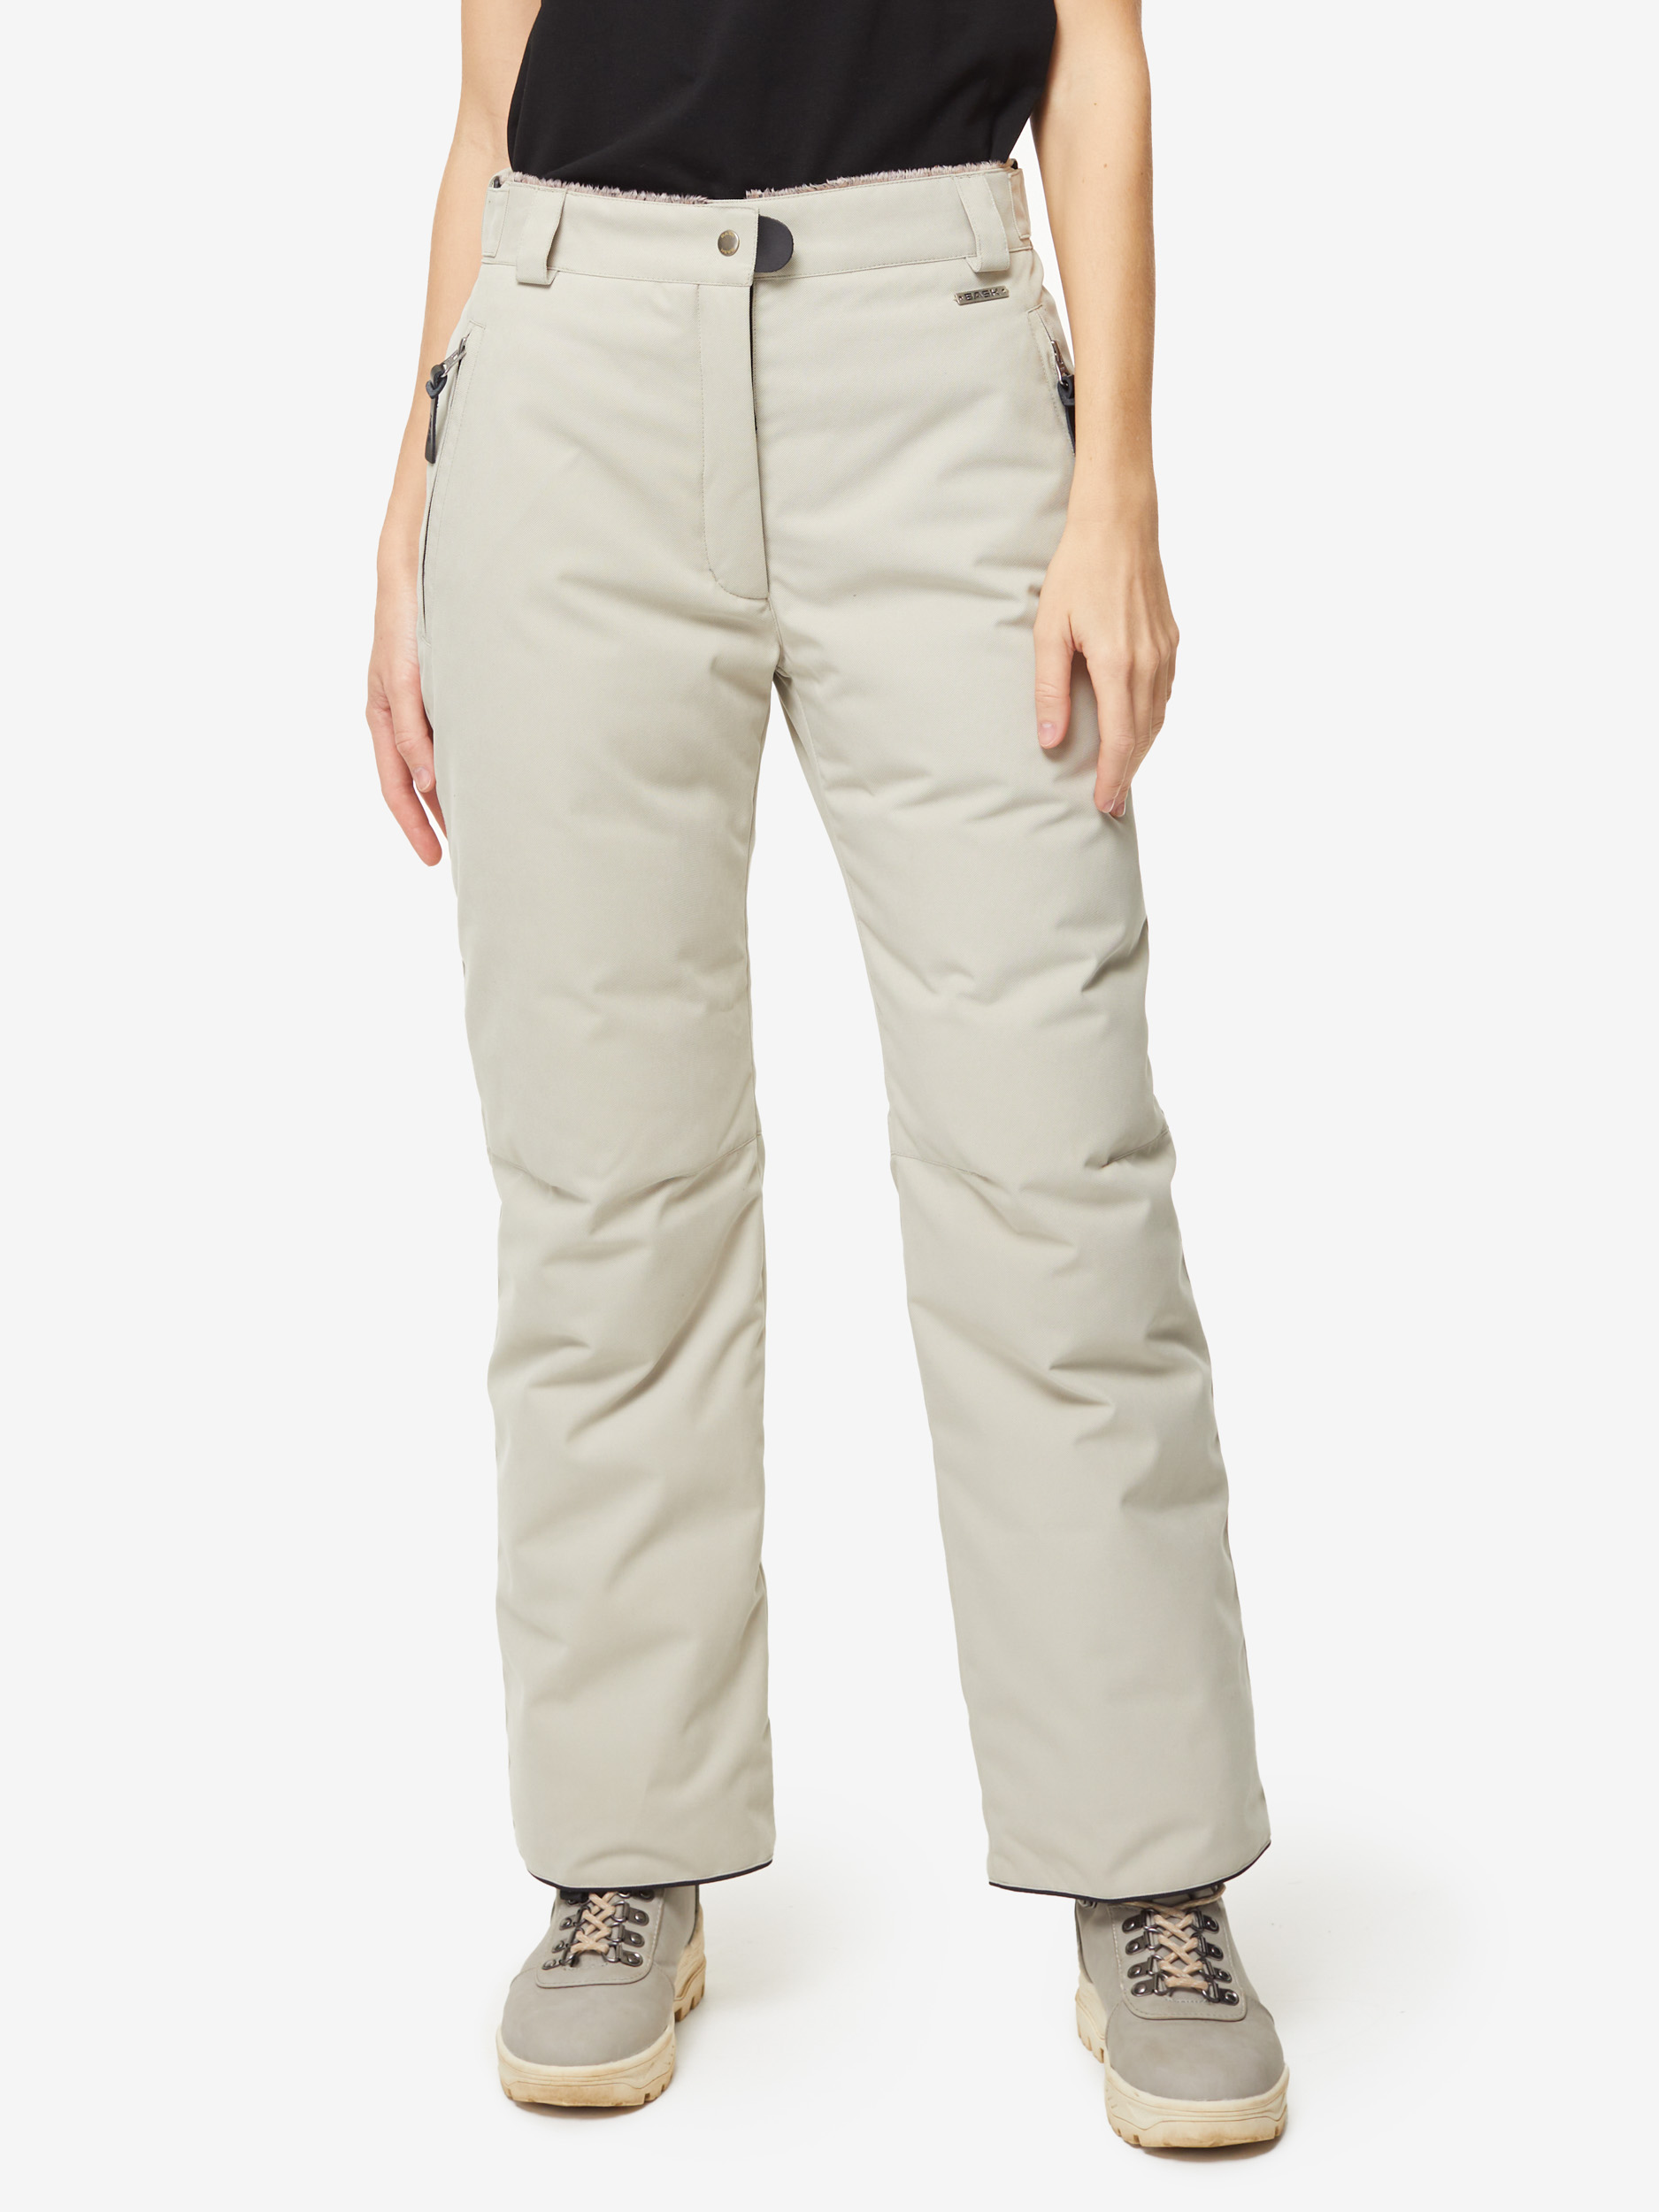 Пуховые брюки BASK, размер 50, цвет коричневый 3780-9905-050 MANARAGA - фото 2